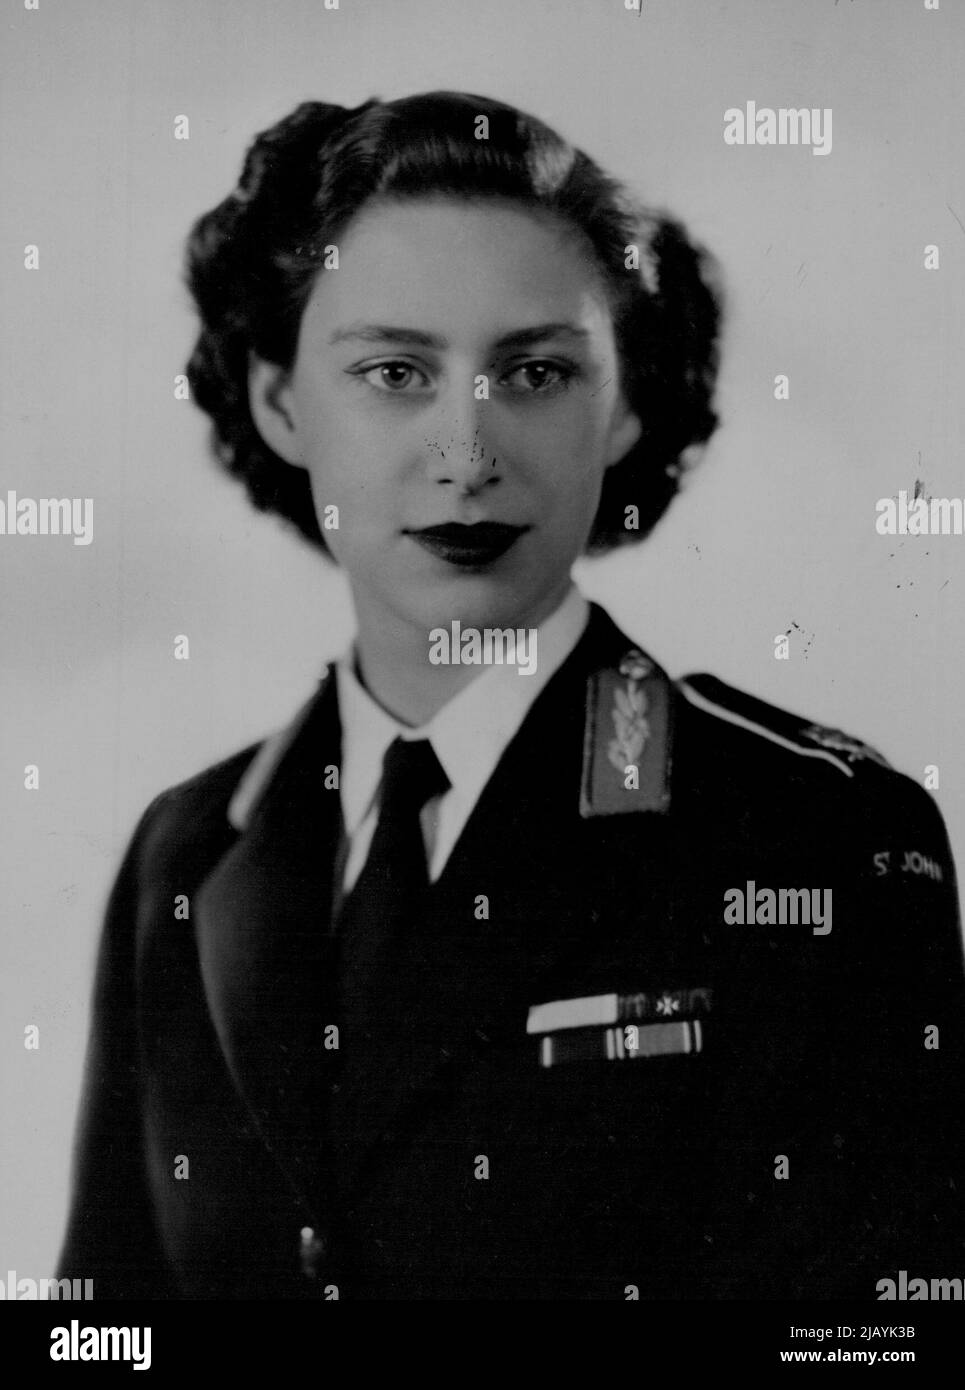 Ein neues Porträt von H. R. H. der Prinzessin Margaret in der Uniform der St. John Ambulance Bridge. 21. Juni 1949. (Foto von Dorothy Wilding). Stockfoto